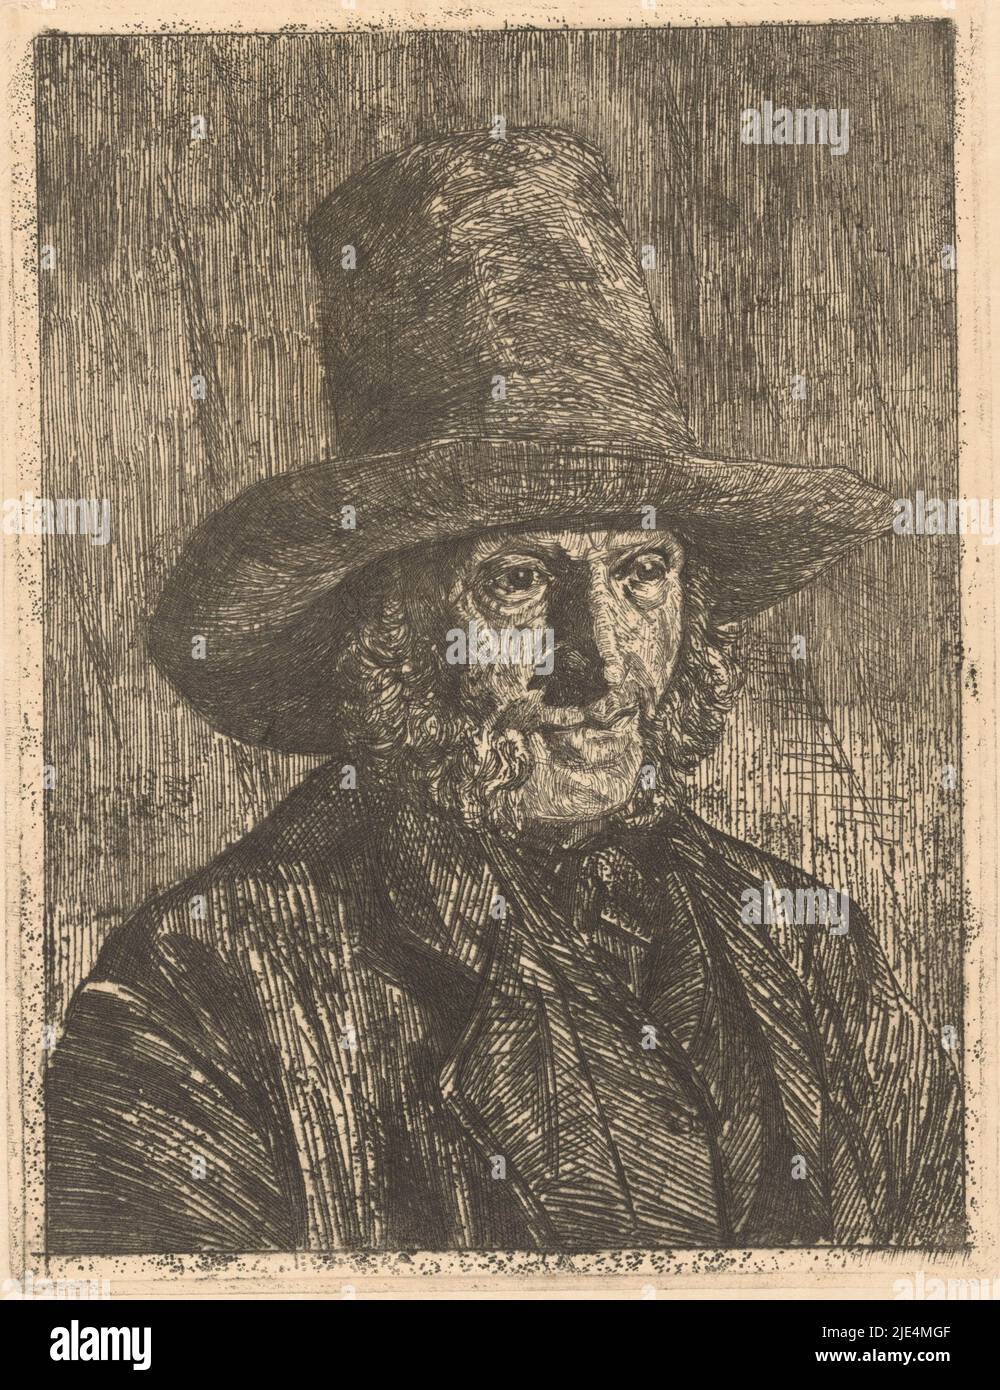 Portrait d'un homme inconnu, Martinus van Regteren Altena, 1876 - 1908, l'homme porte un chapeau et a des pattes., Imprimeur: Martinus van Regteren Altena, 1876 - 1908, papier, gravure, h 246 mm × l 188 mm Banque D'Images